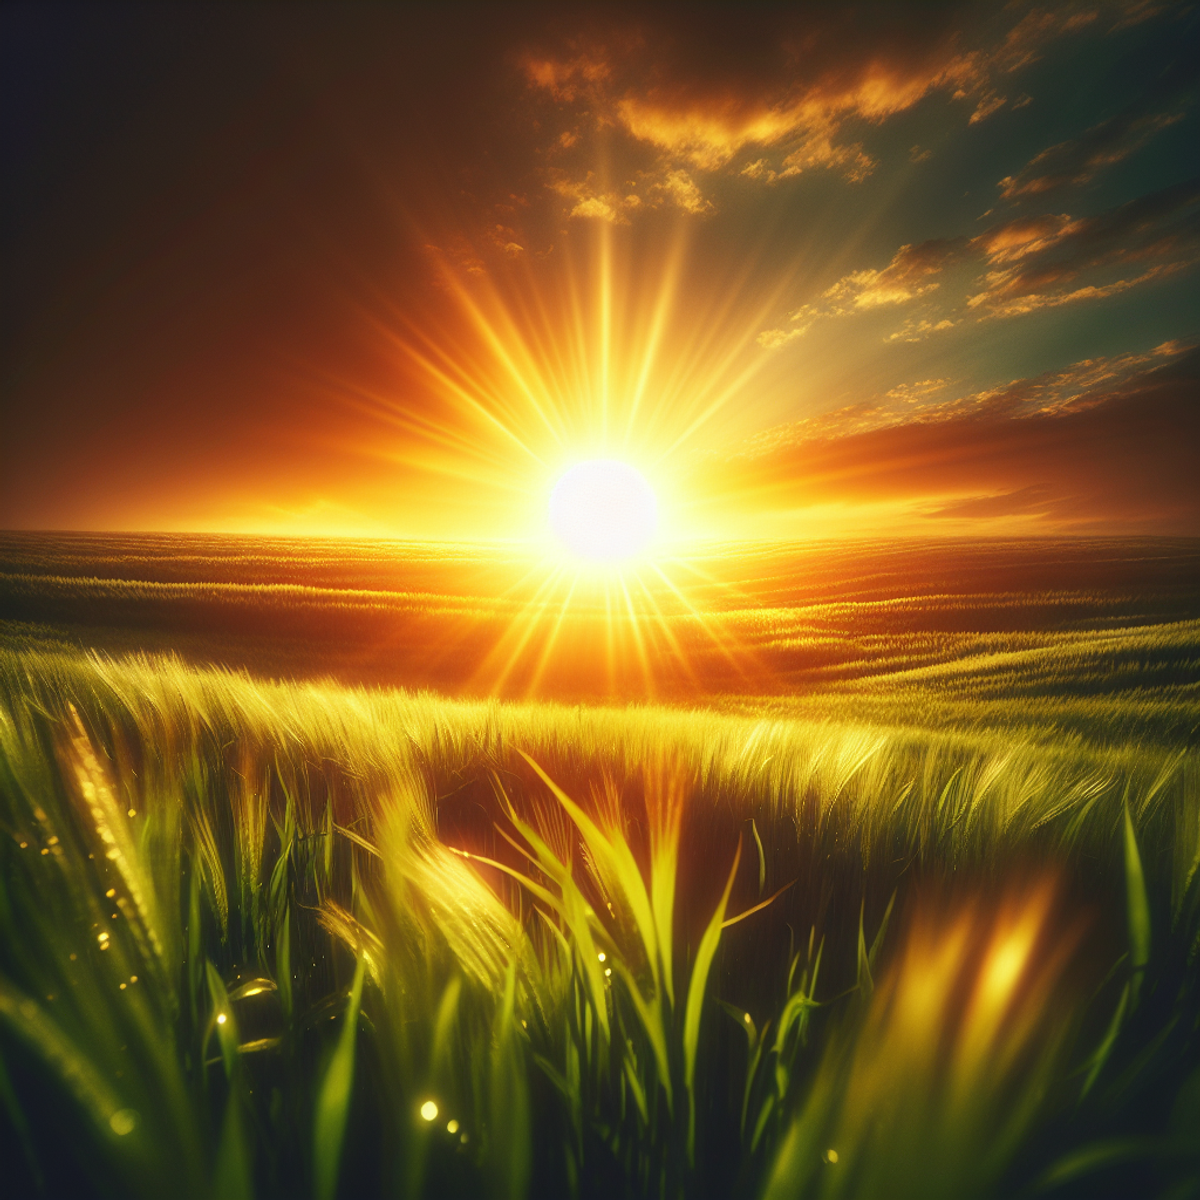 A golden sunrise over a green field.